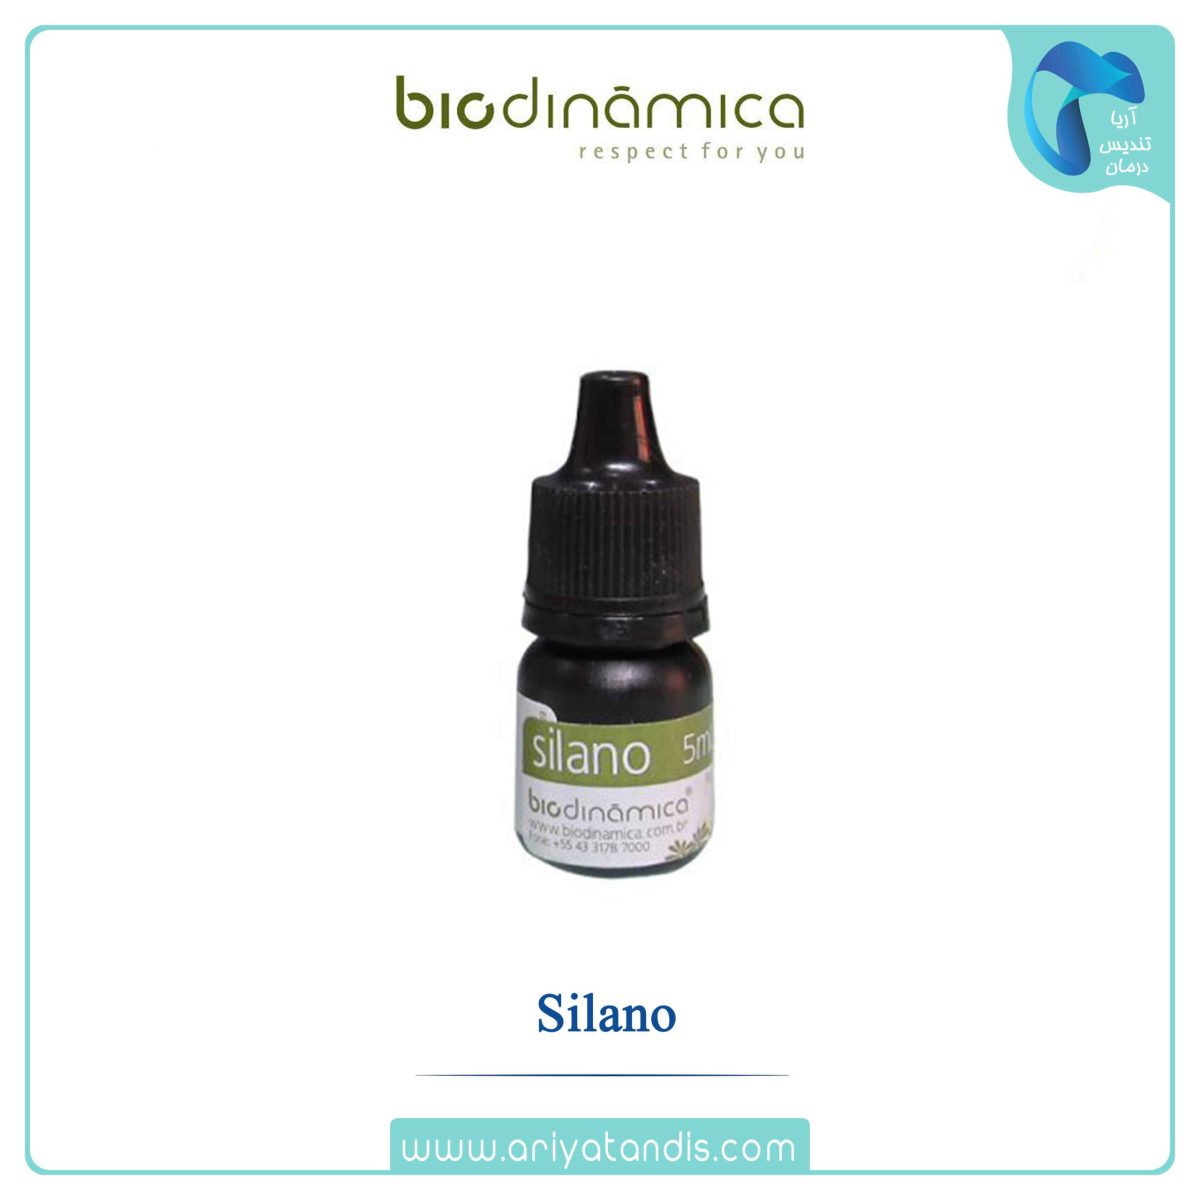 Biodinamica - Silano